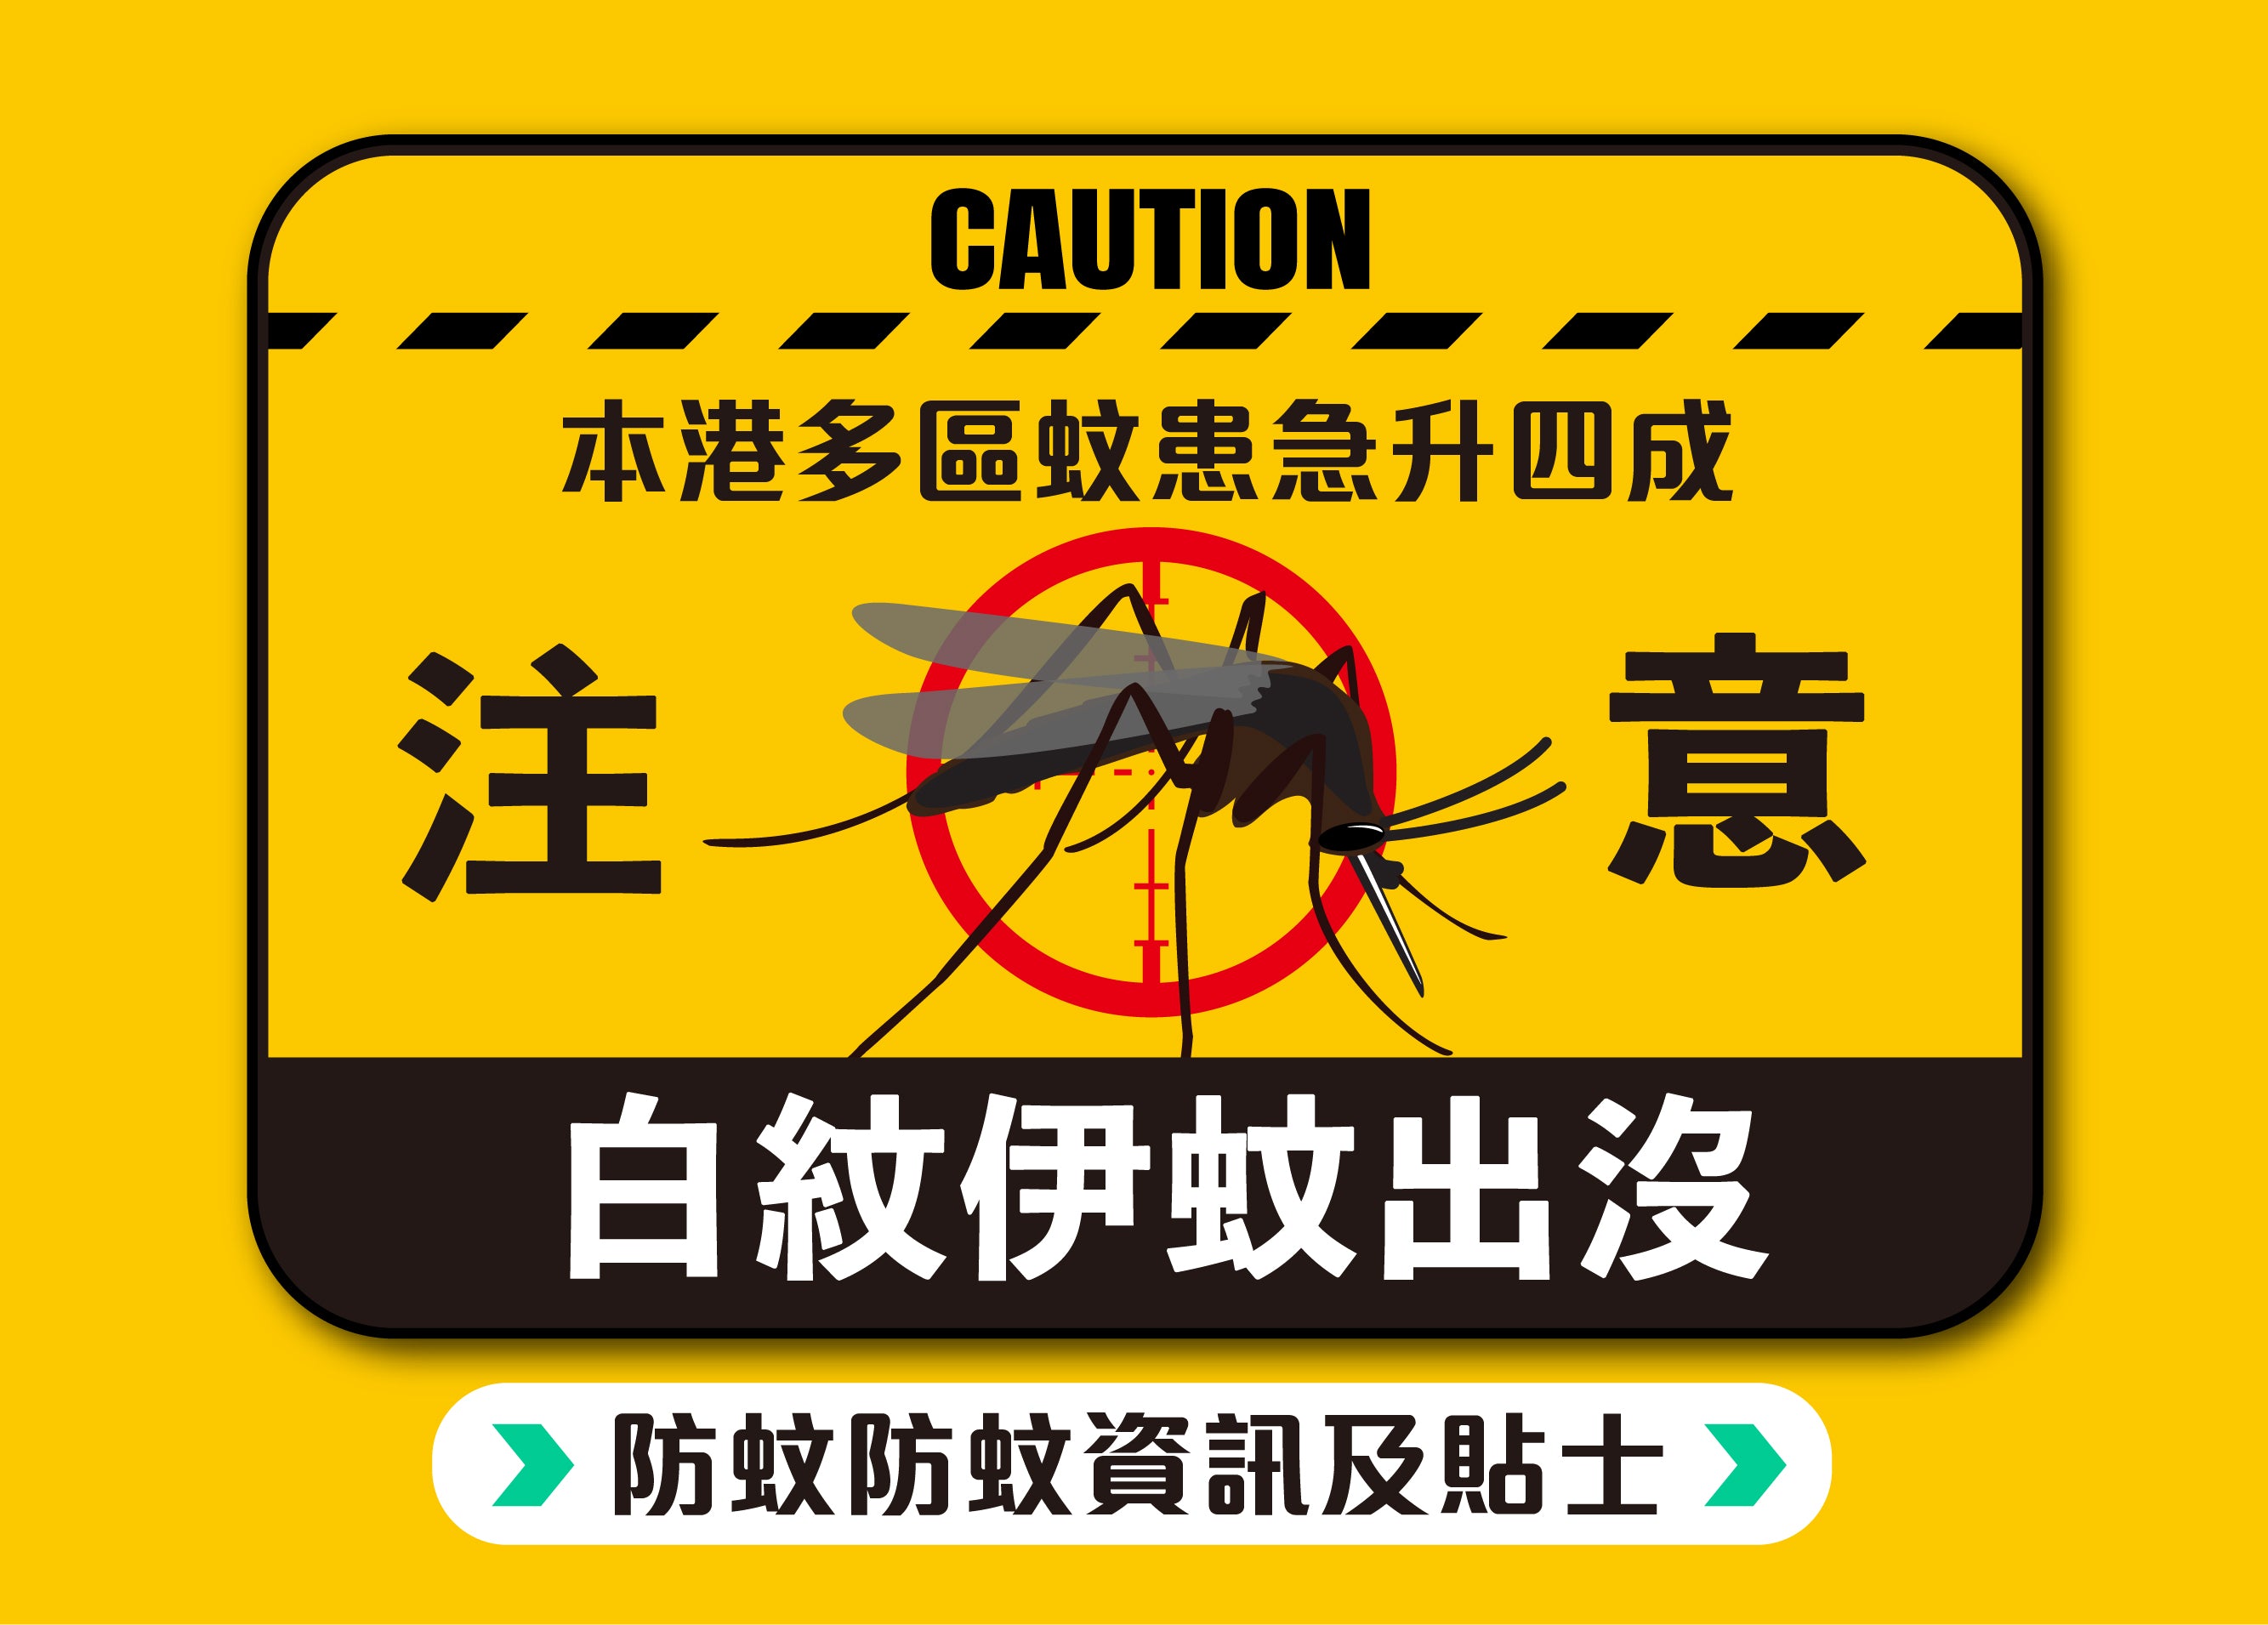 防蚊資訊及貼士